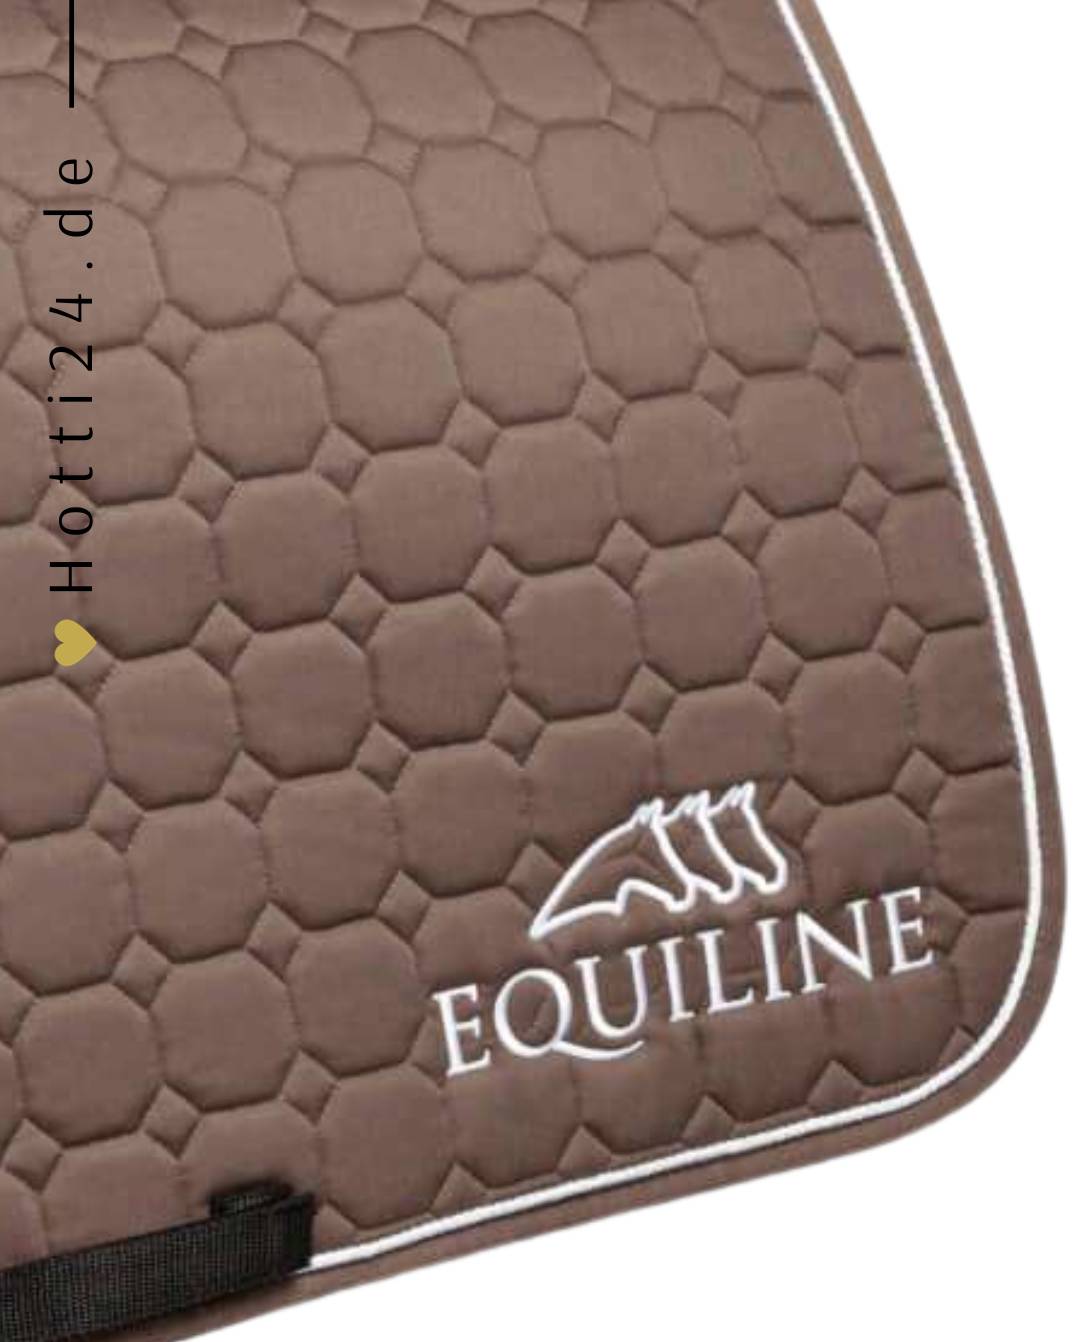 Pferde Springschabracke "Outline" von EQUILINE in der Farbe Braun mit der Artikelnummer B01042-N-799. Diese Springschabracke wurde speziell entwickelt, um Ihrem Pferd während des Springreitens einen eleganten und komfortablen Sitz zu bieten. Sie können diese Pferde Springschabracke auf der Website www.hotti24.de erwerben